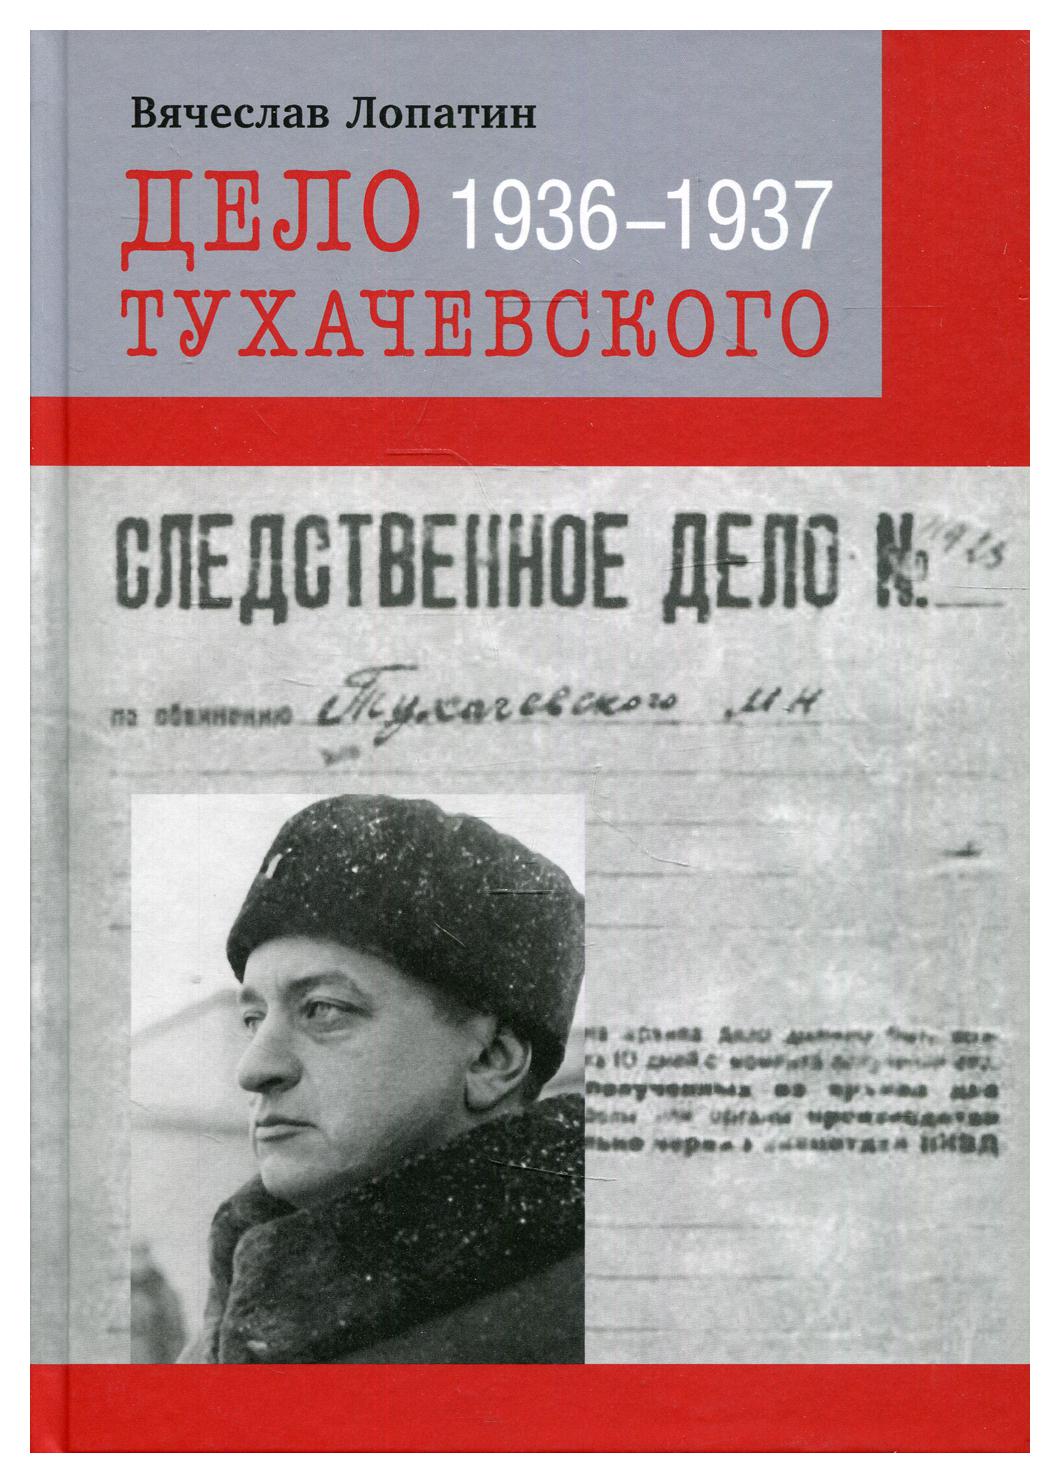 фото Книга дело тухачевского: 1936-1937 кучково поле